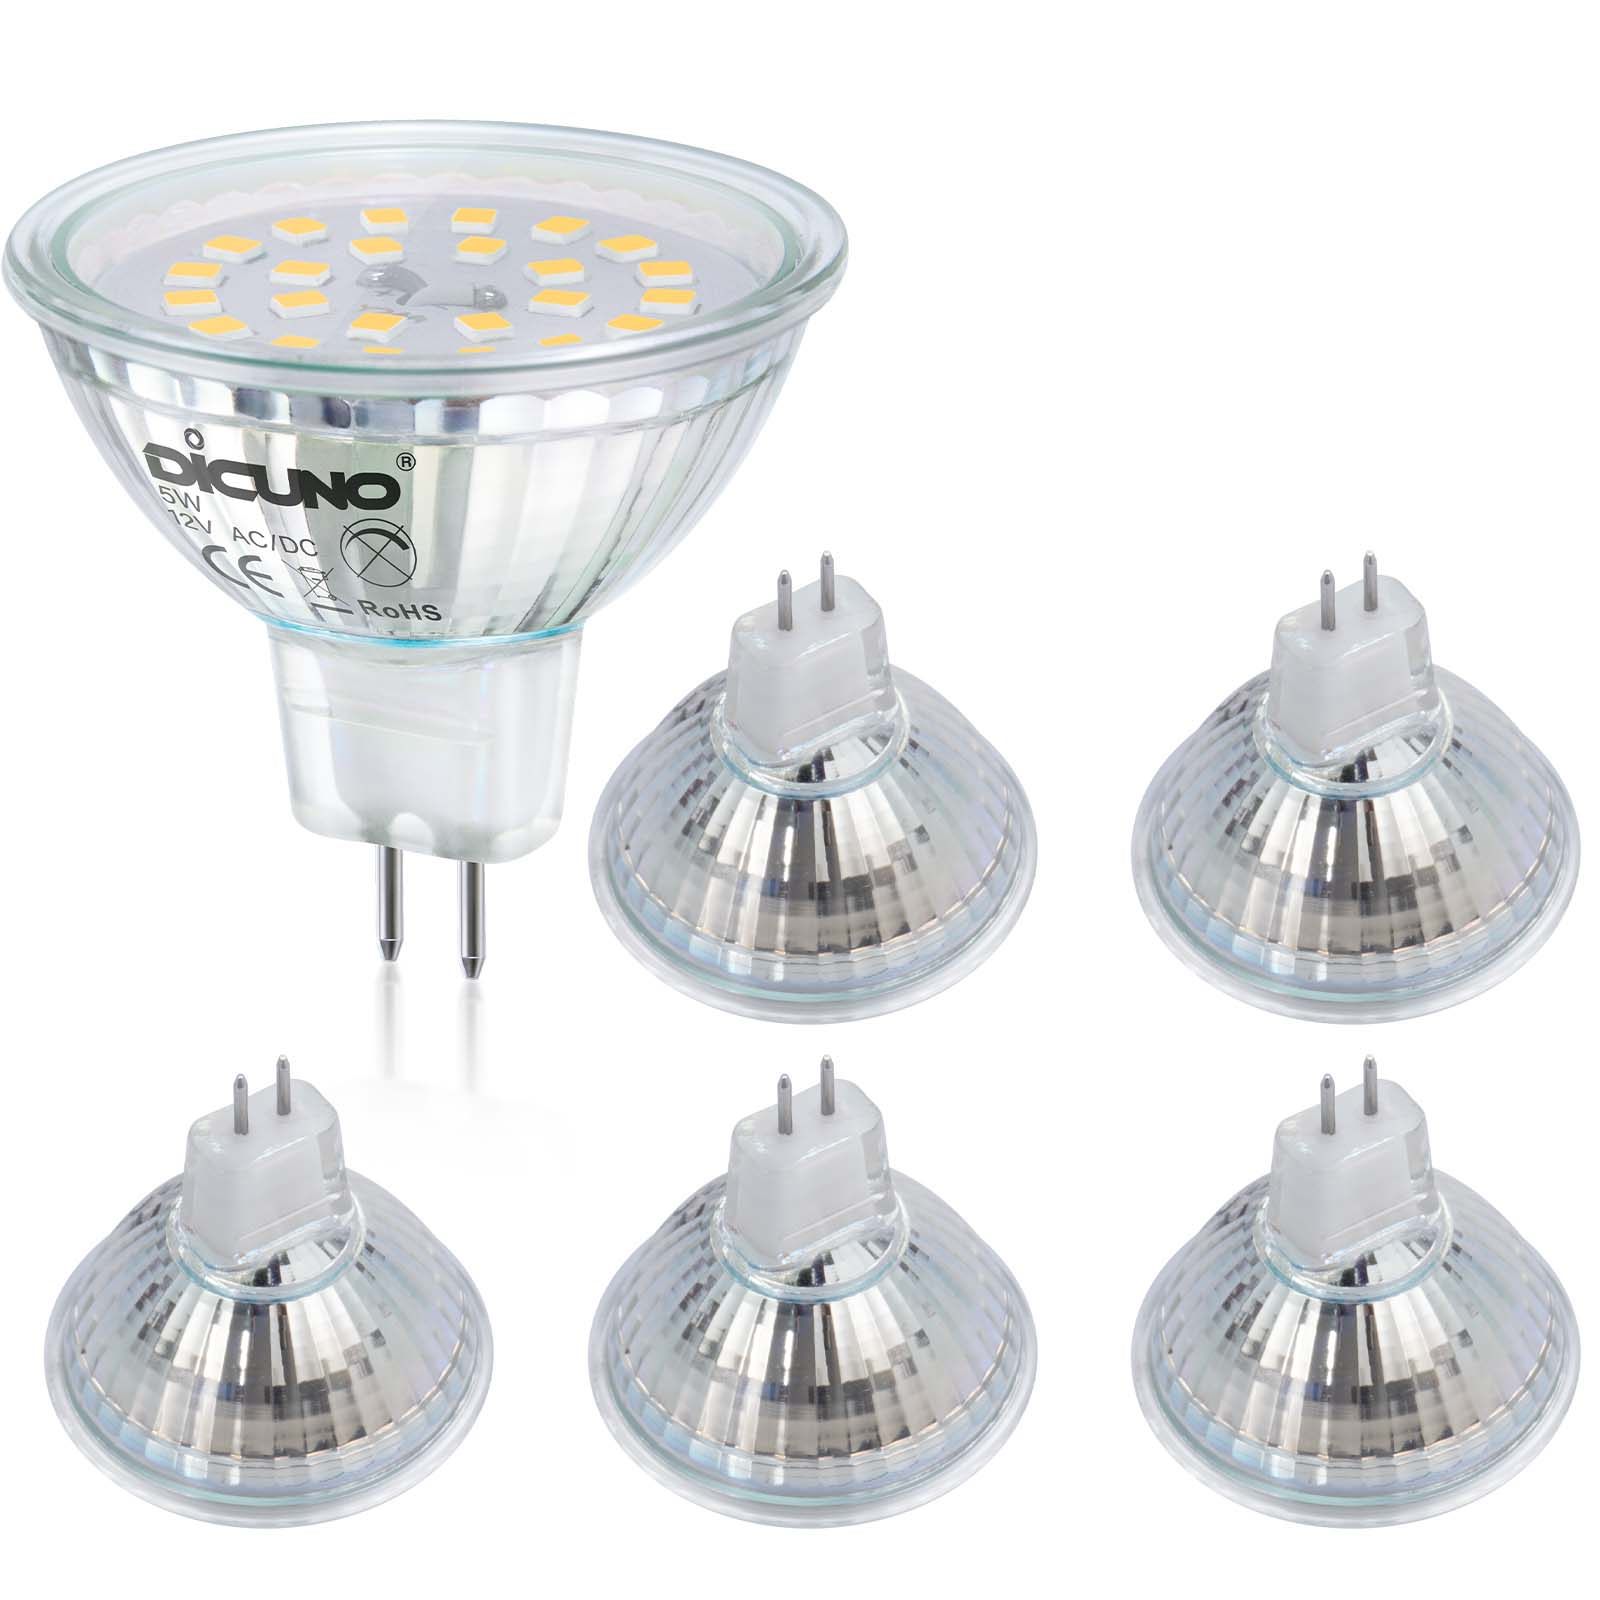 DiCUNO GU10 LED Bulbs 5W Warm White 3000K, 500lm, 120 Degree Beam